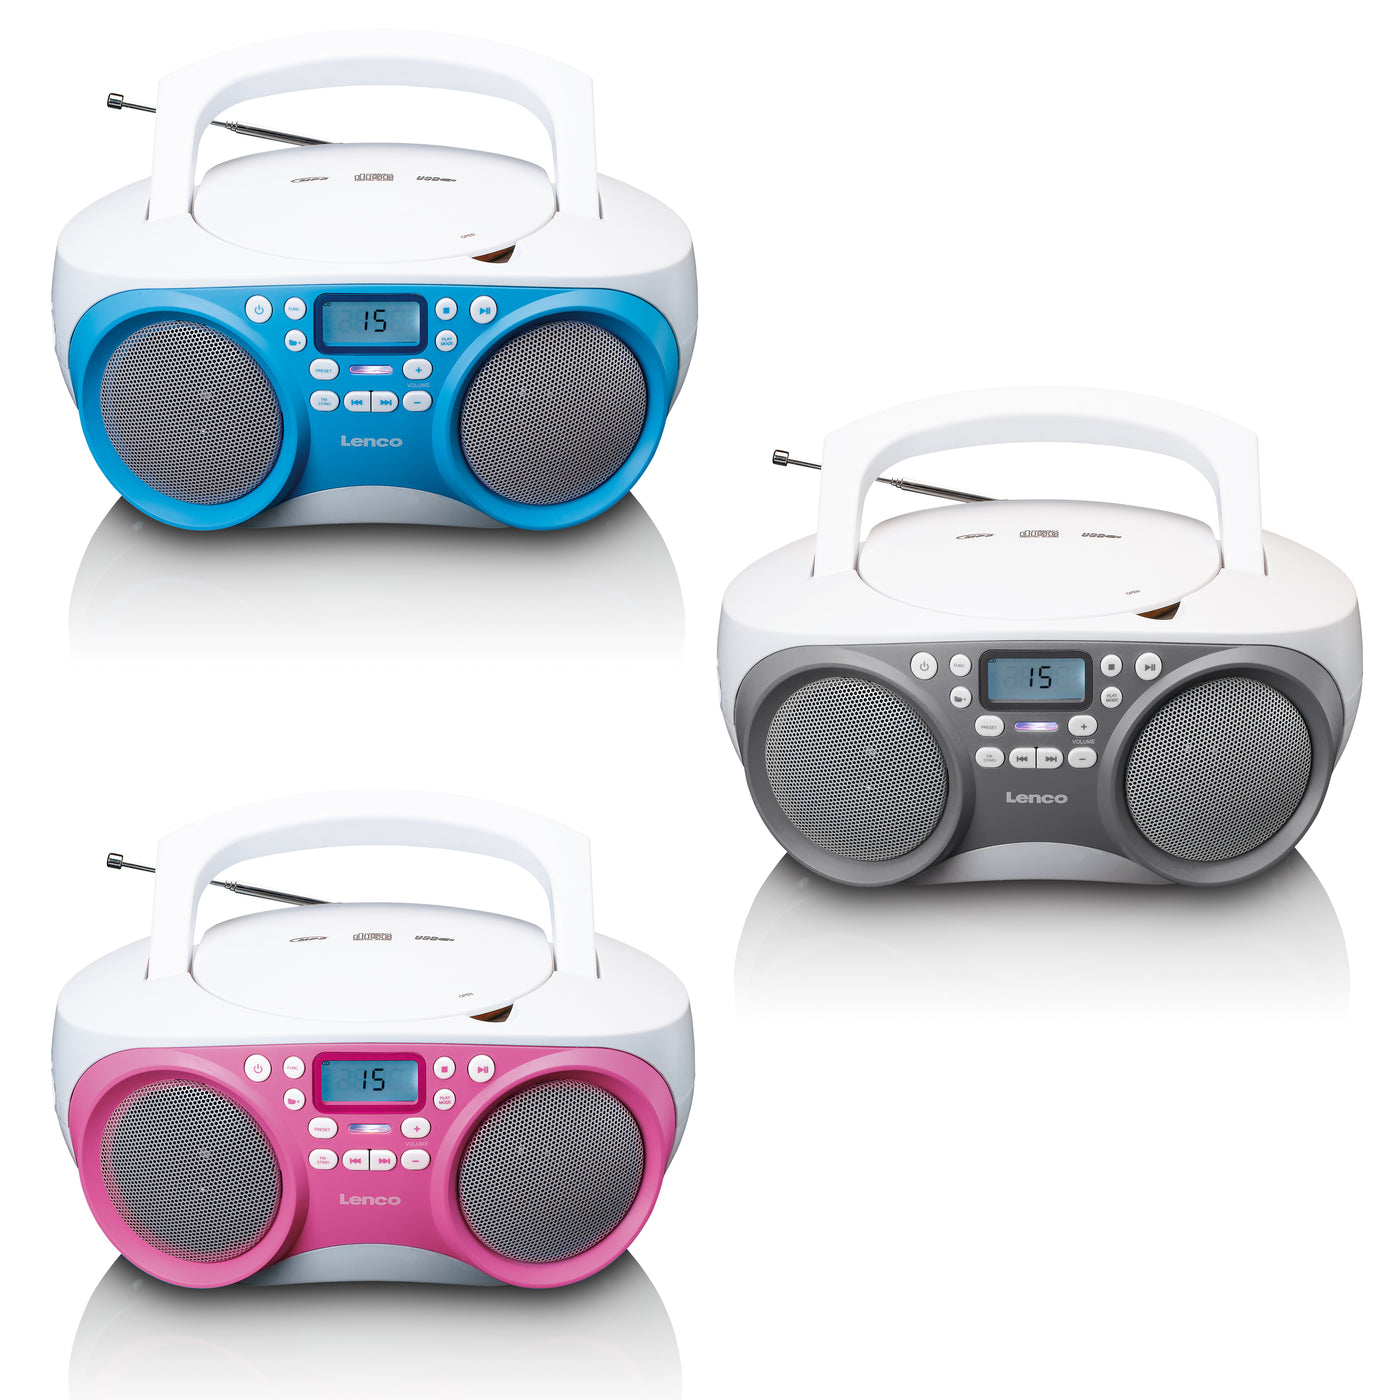 LENCO SCD-301BU - Przenośne radio FM/CD/MP3 i odtwarzacz USB - Niebieski